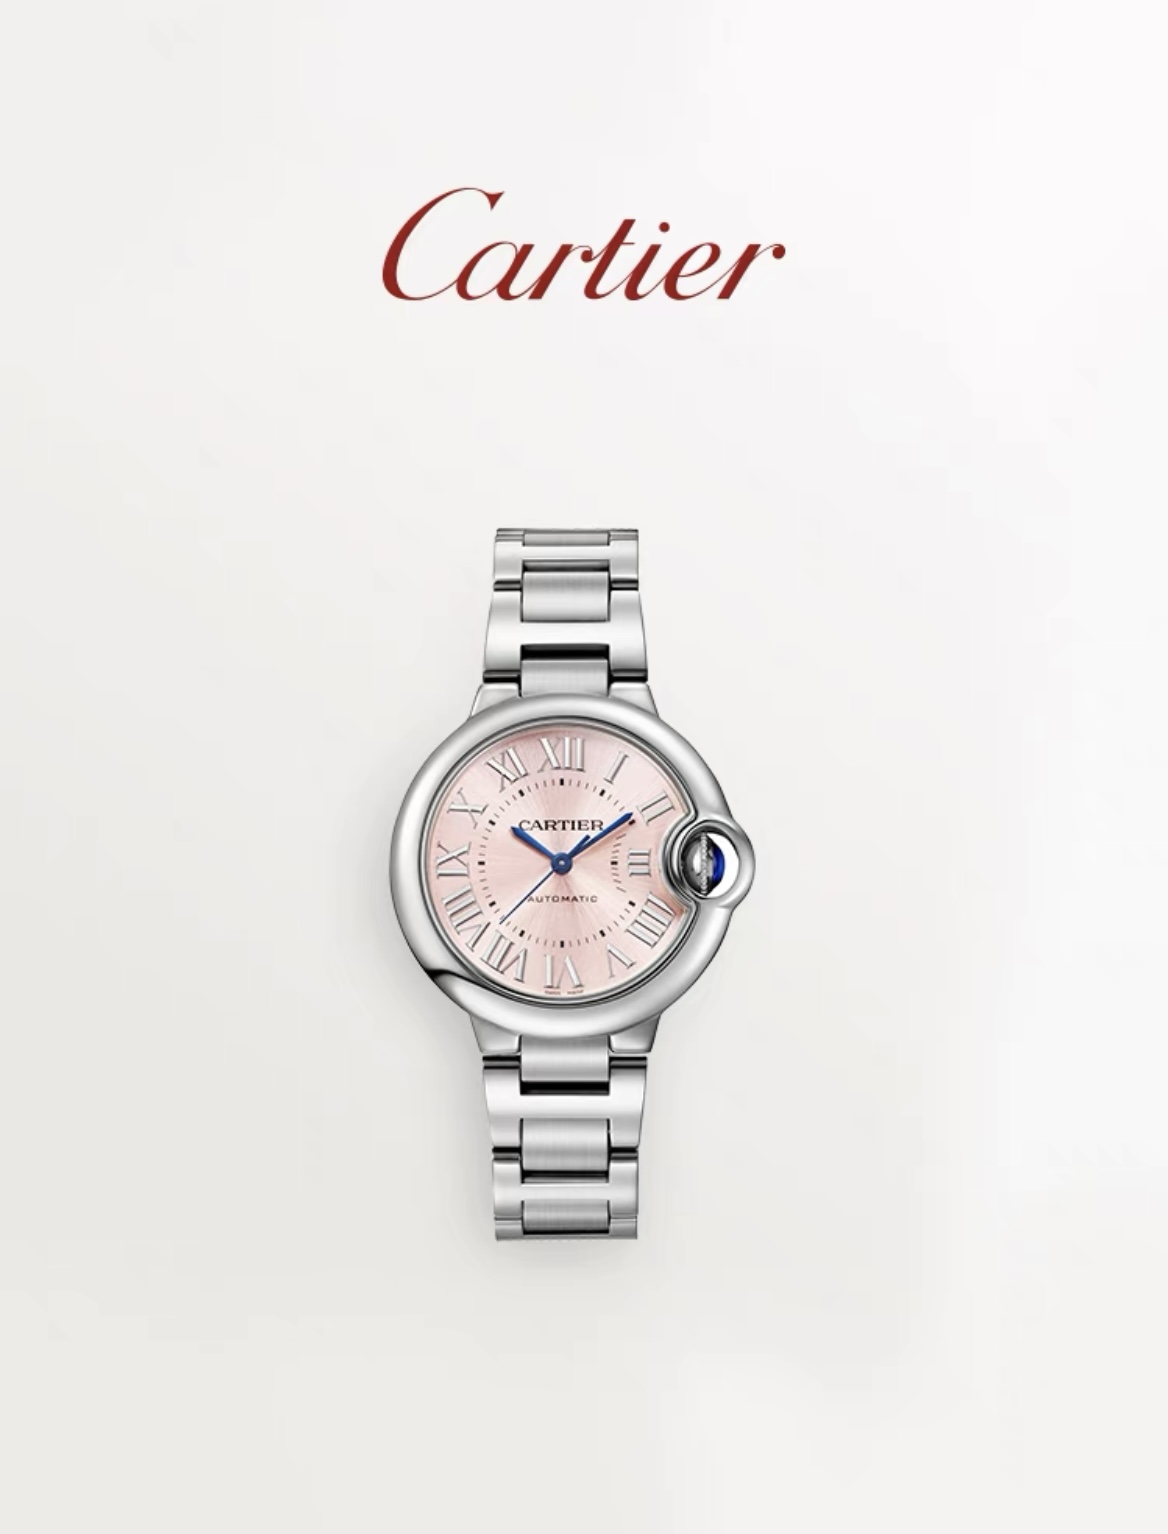 Cartier卡地亚官方旗舰店Ballon Bleu蓝气球机械腕表 精钢手表